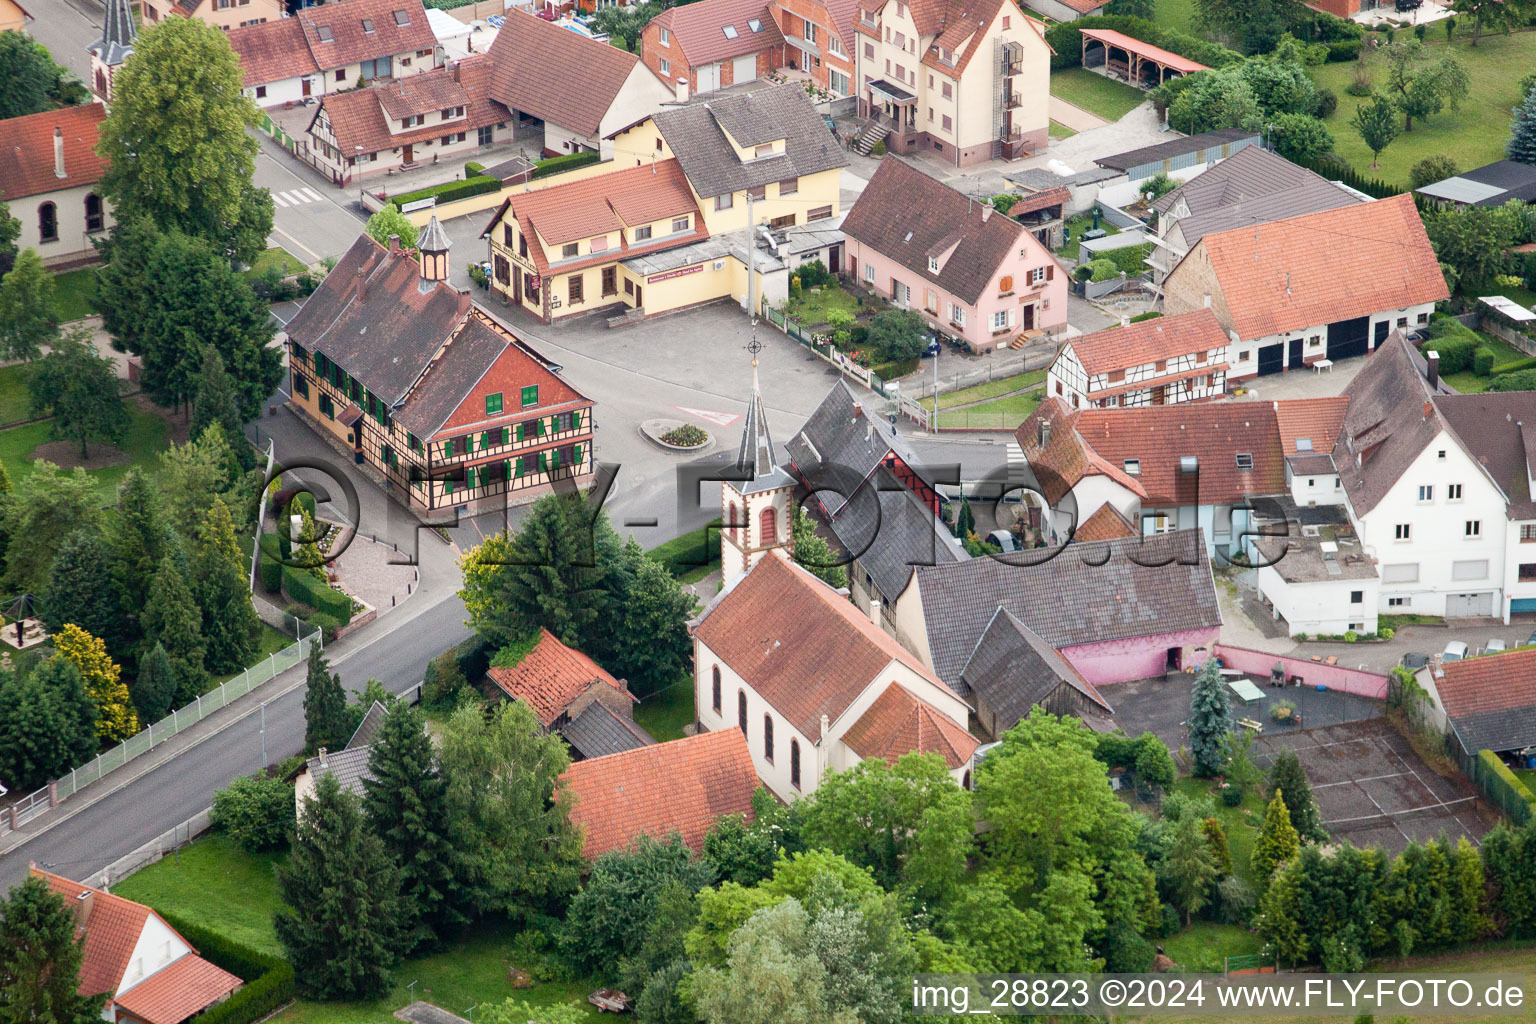 Vue sur le village à Dalhunden dans le département Bas Rhin, France d'en haut